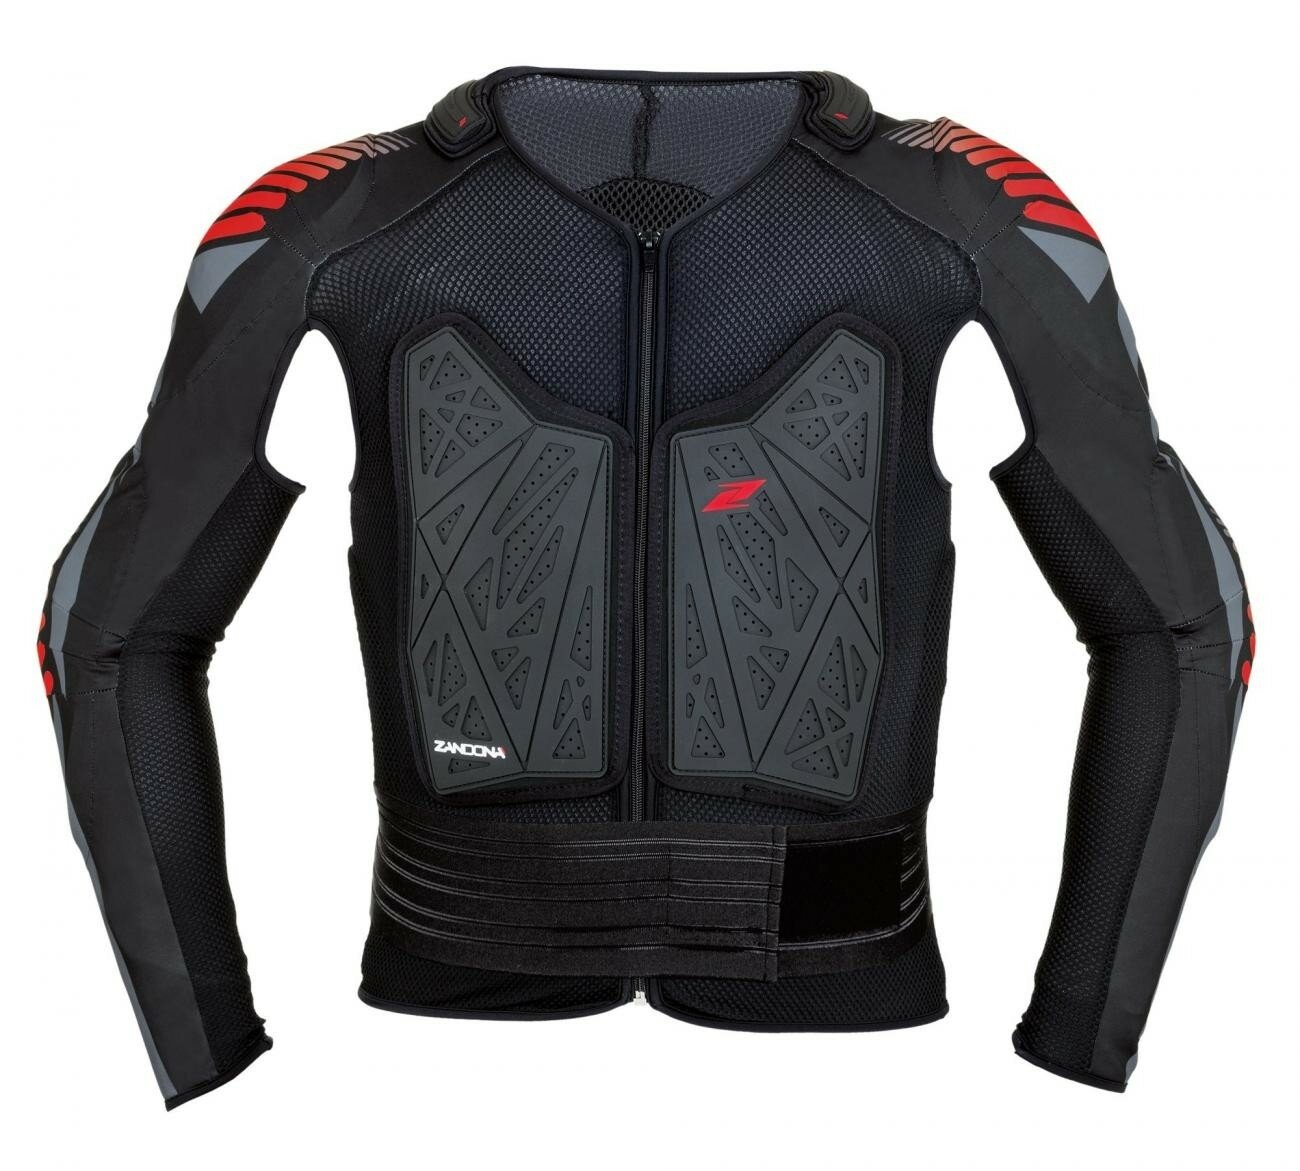 Жилет защитный ZANDONA Soft active jacket evo x6 черн